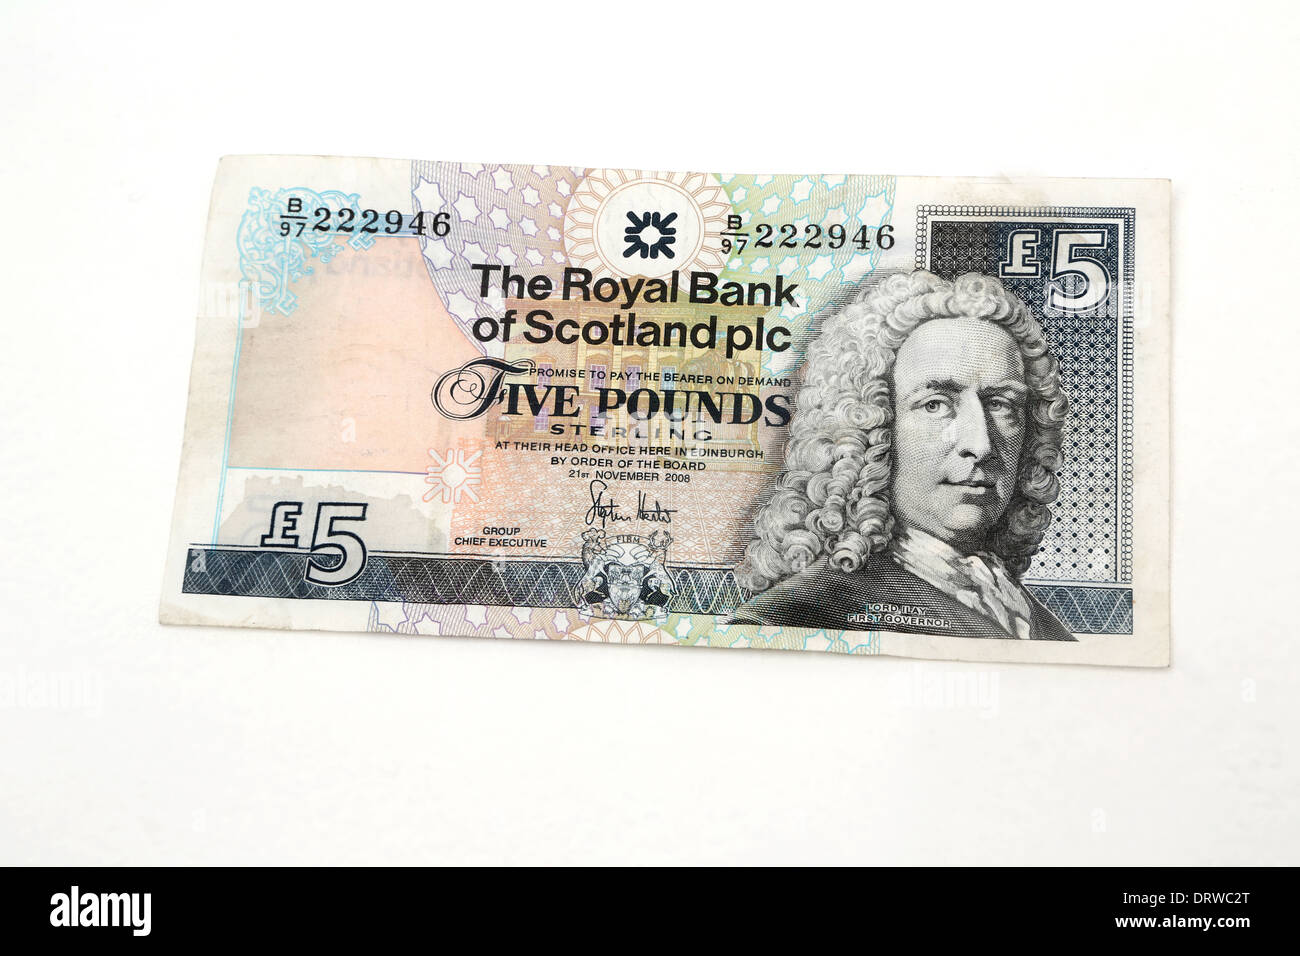 Royal Bank Of Scotland-fünf-Pfund-Note mit Bild von Herrn Islay erster Gouverneur Stockfoto